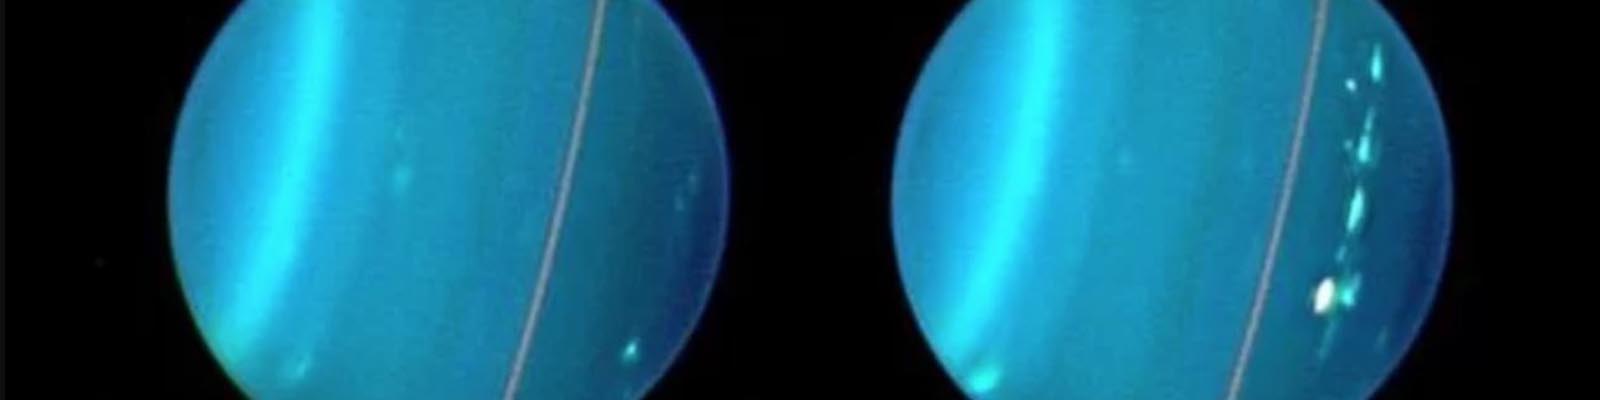 La planète Uranus par le télescope spatial Hubble